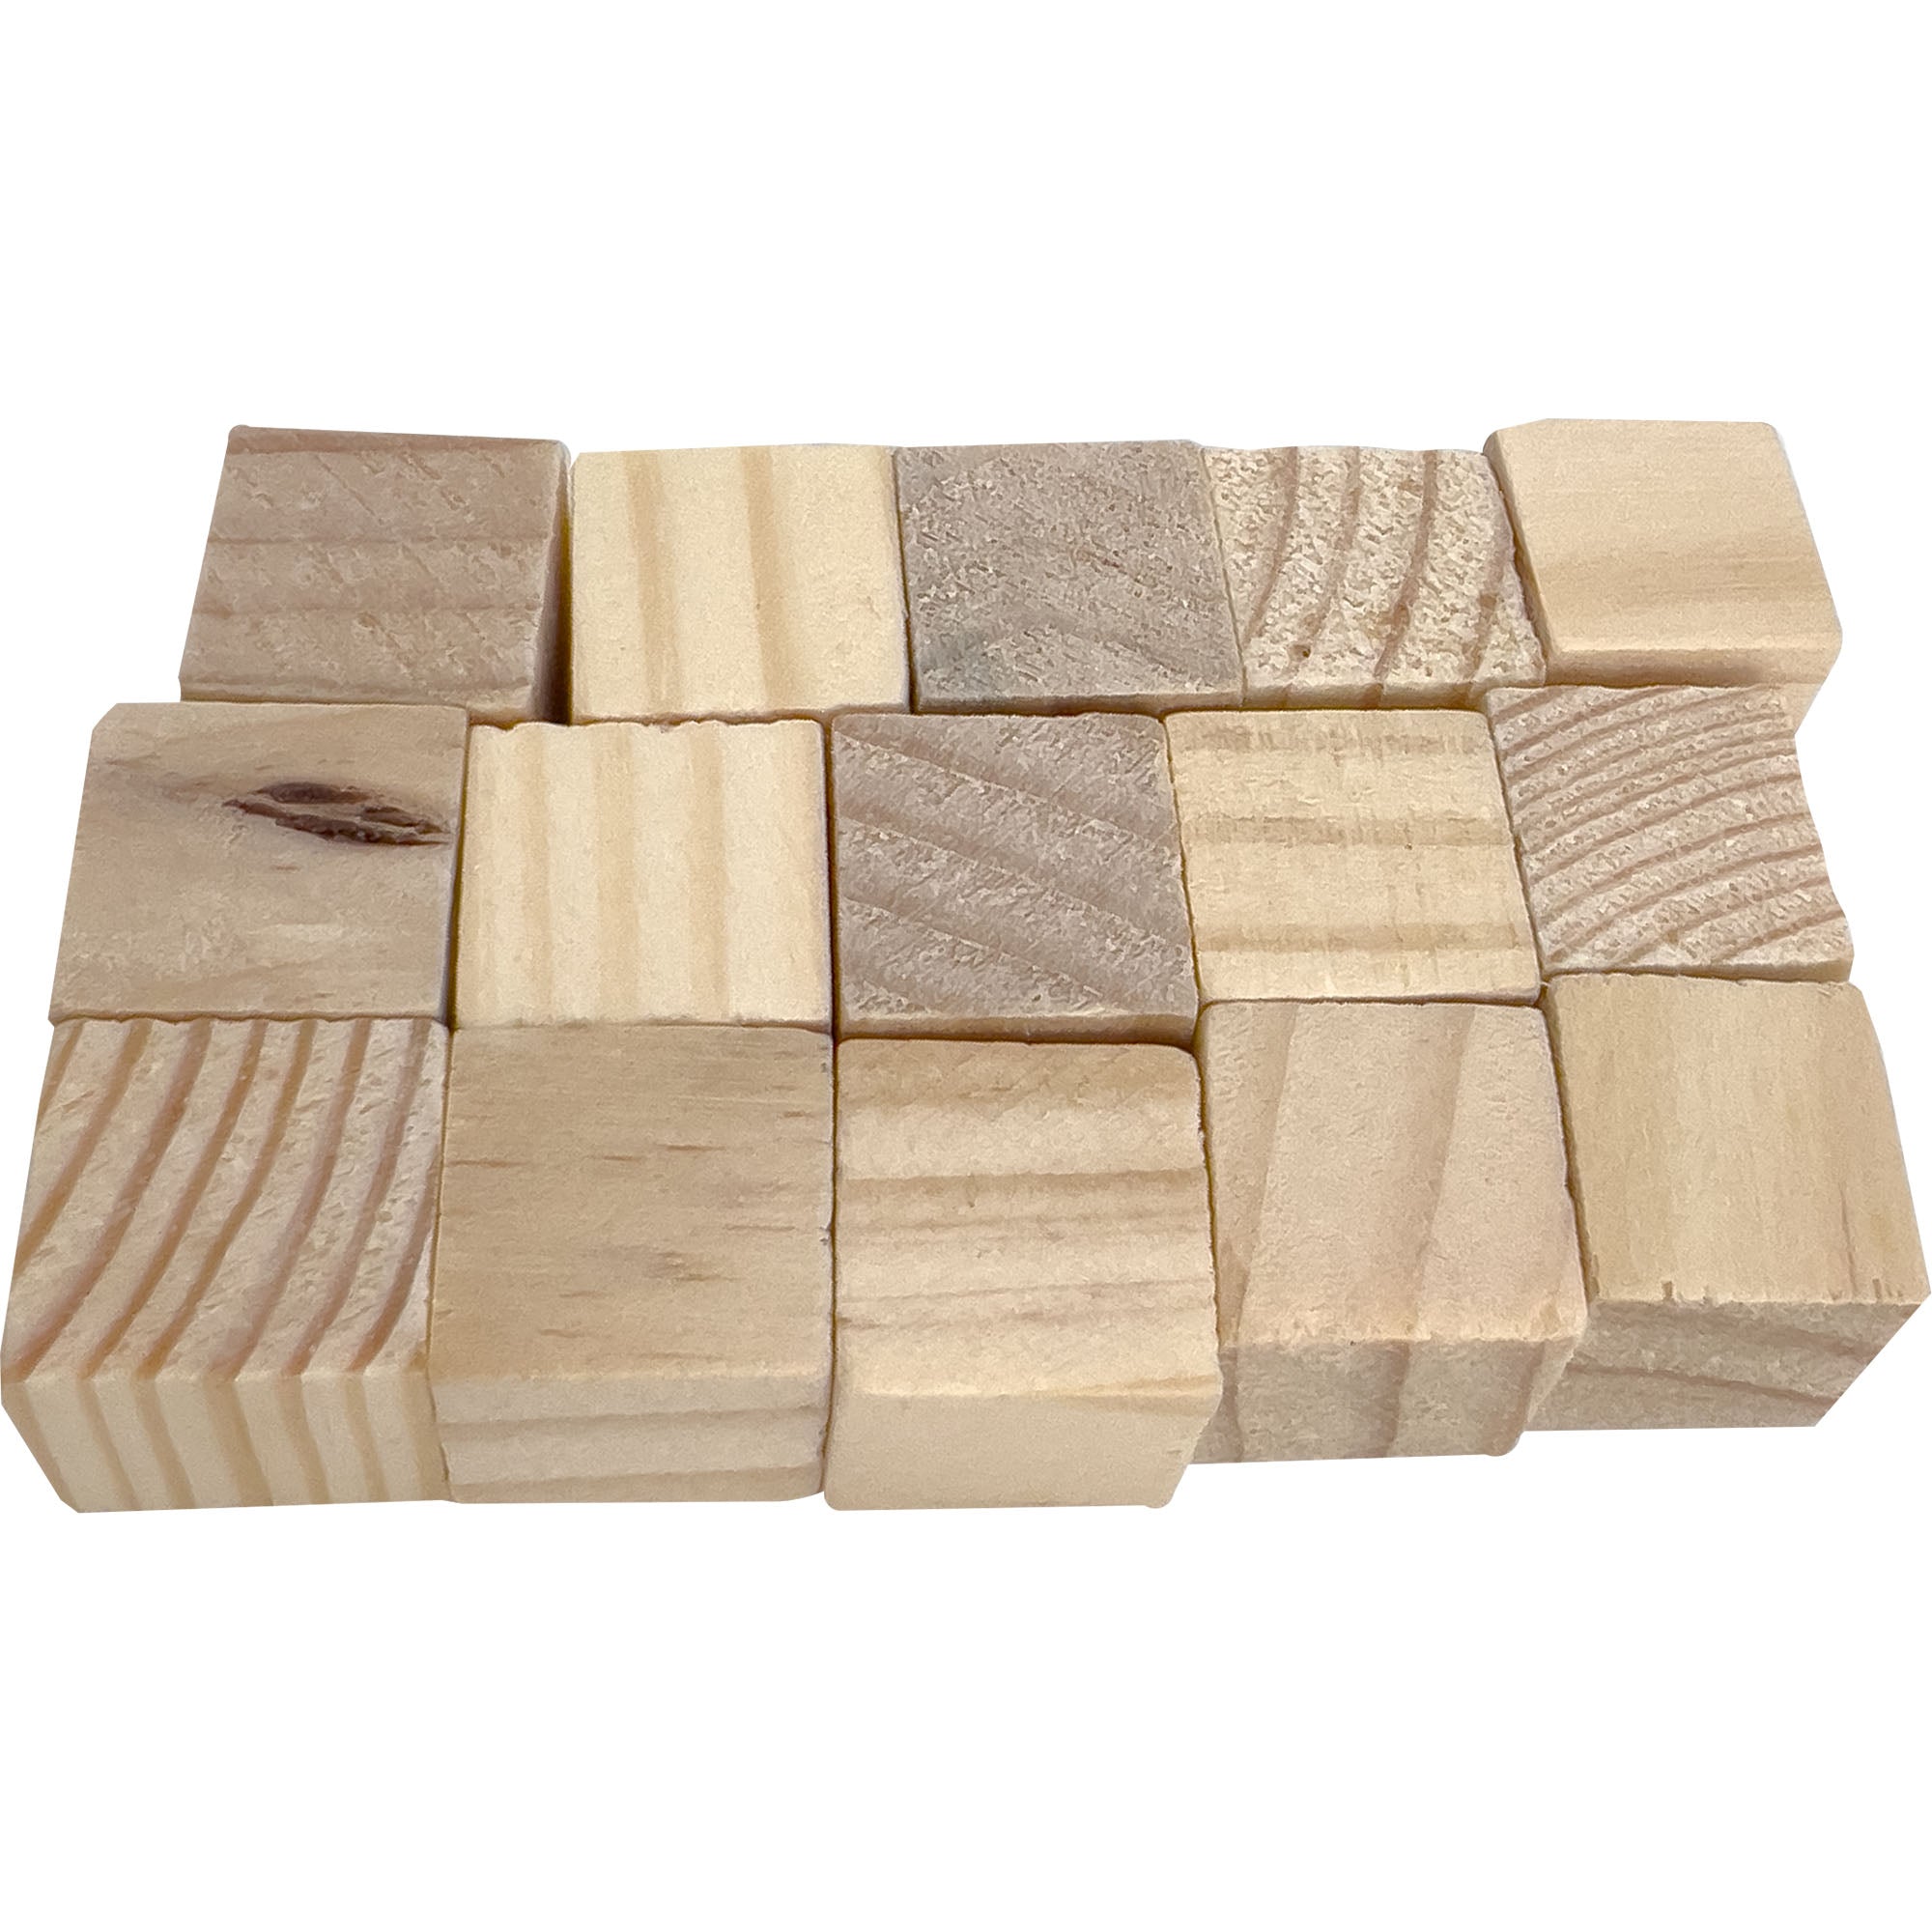 2061 Pk15 Wood Cubes